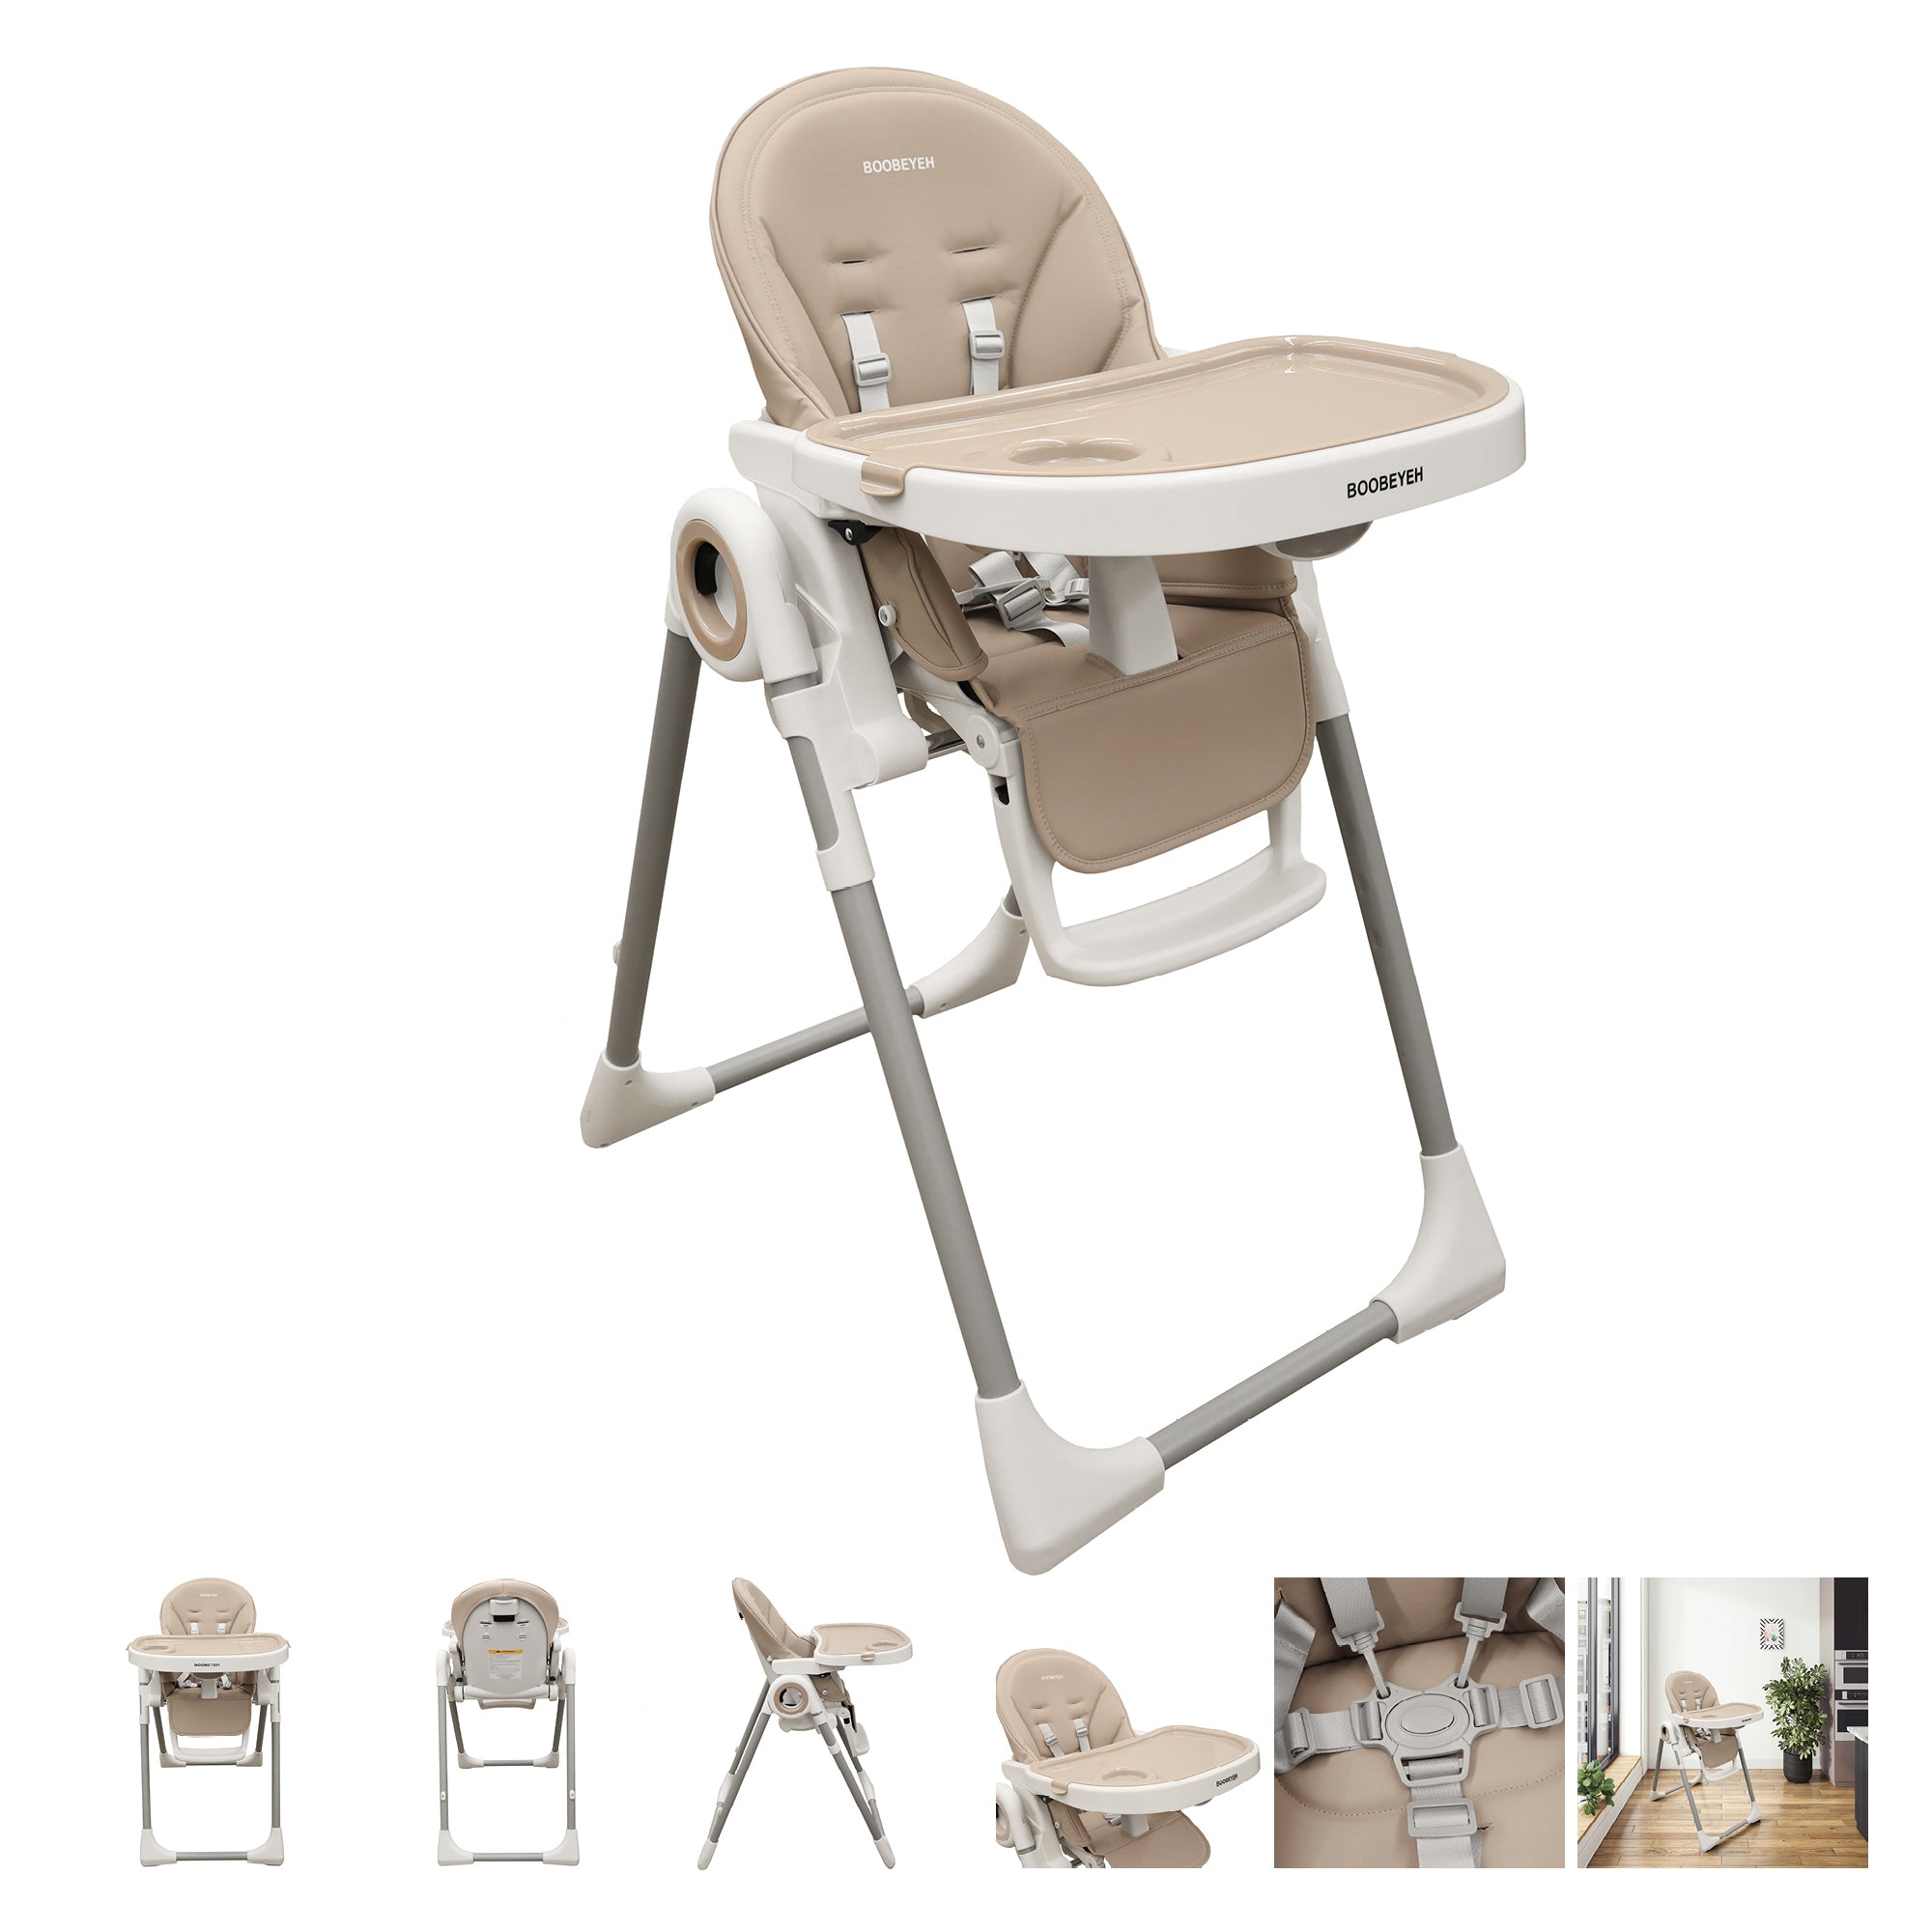 Kit de depart poussette boobeyeh, chaise bercante, siège auto Graco, lit de bébé, bureau double, chaise haute, bassinette et matelas de base